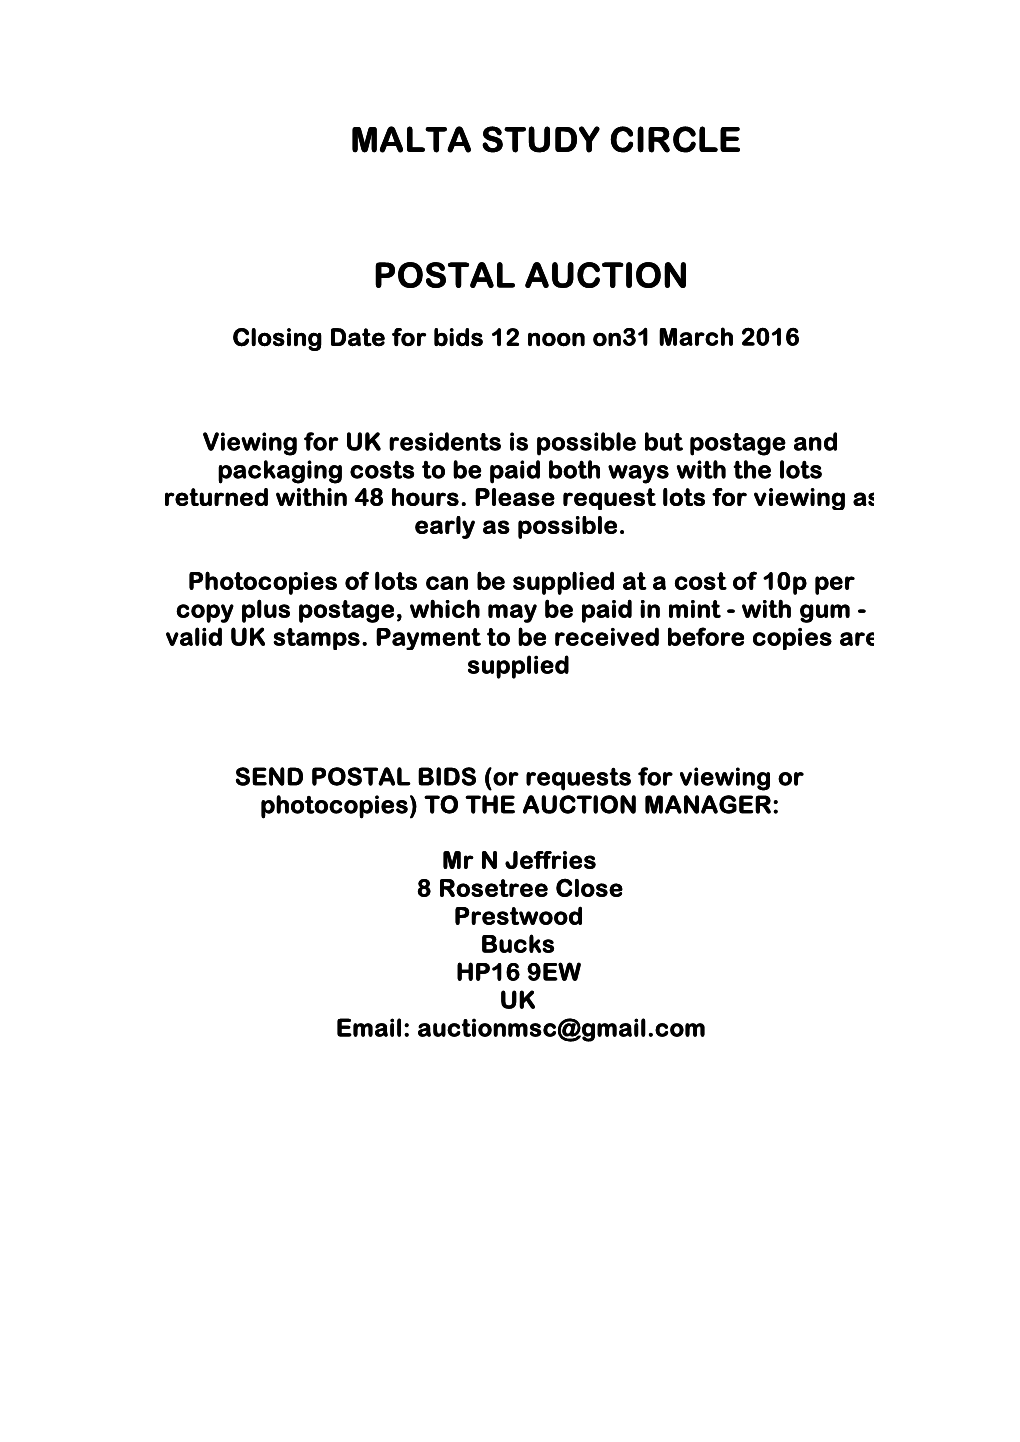 Auction List